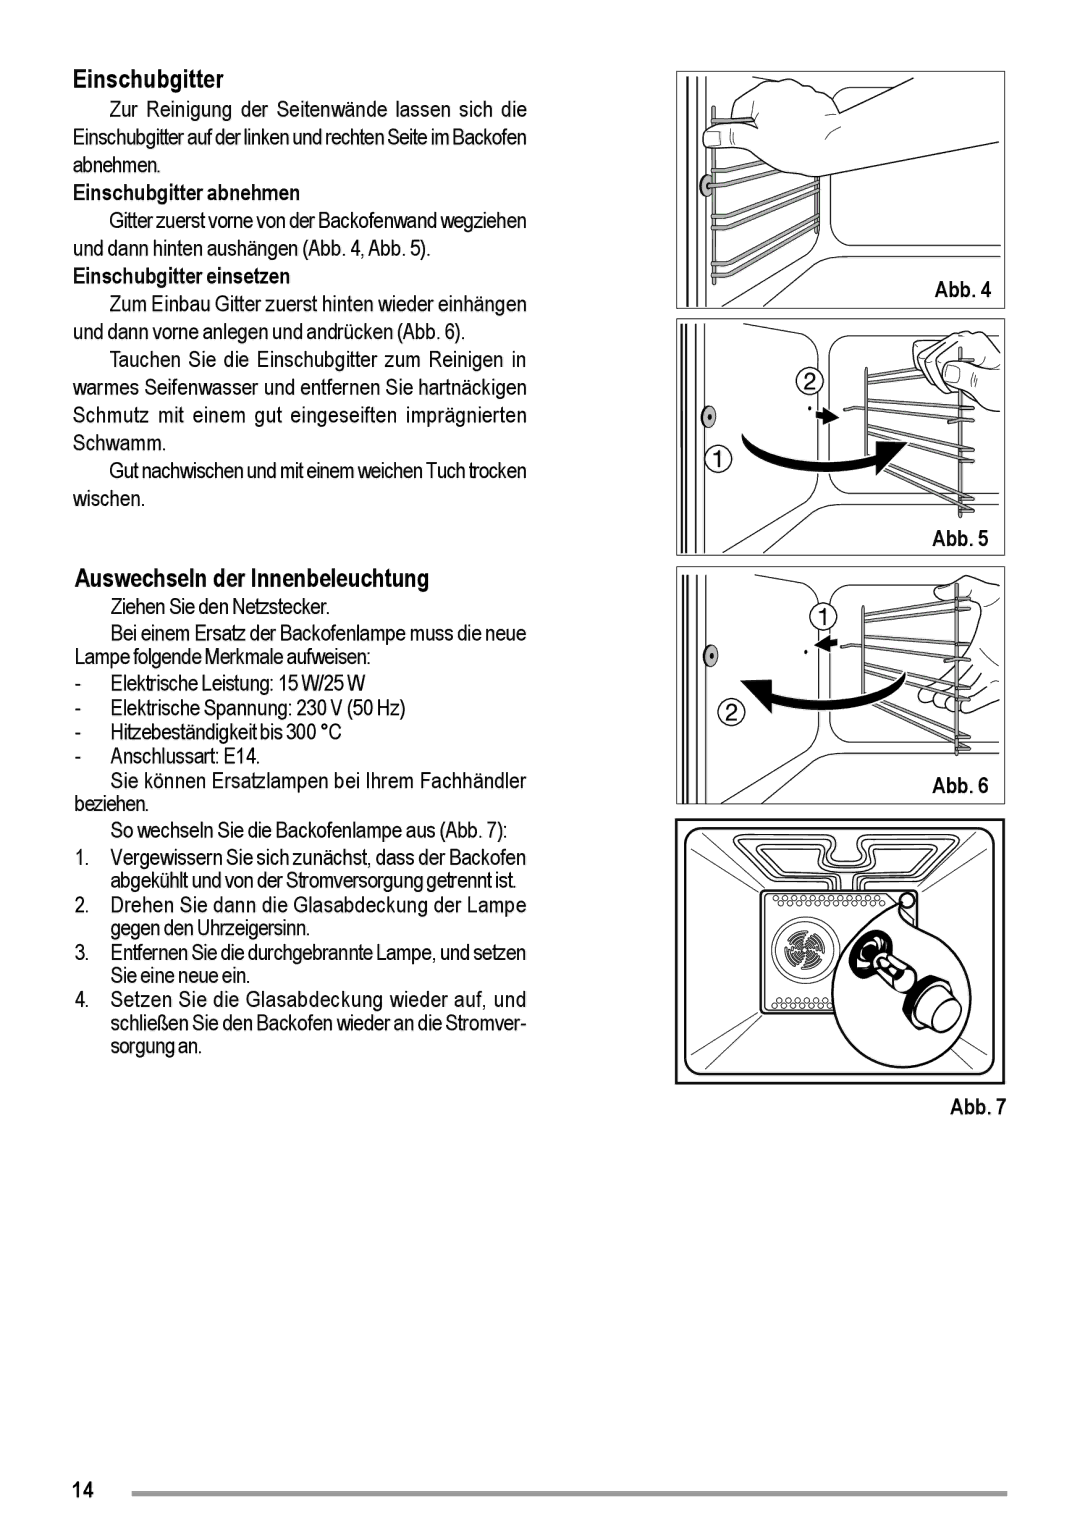 Zanussi ZOU 363 user manual Auswechseln der Innenbeleuchtung, Einschubgitter abnehmen, Einschubgitter einsetzen 